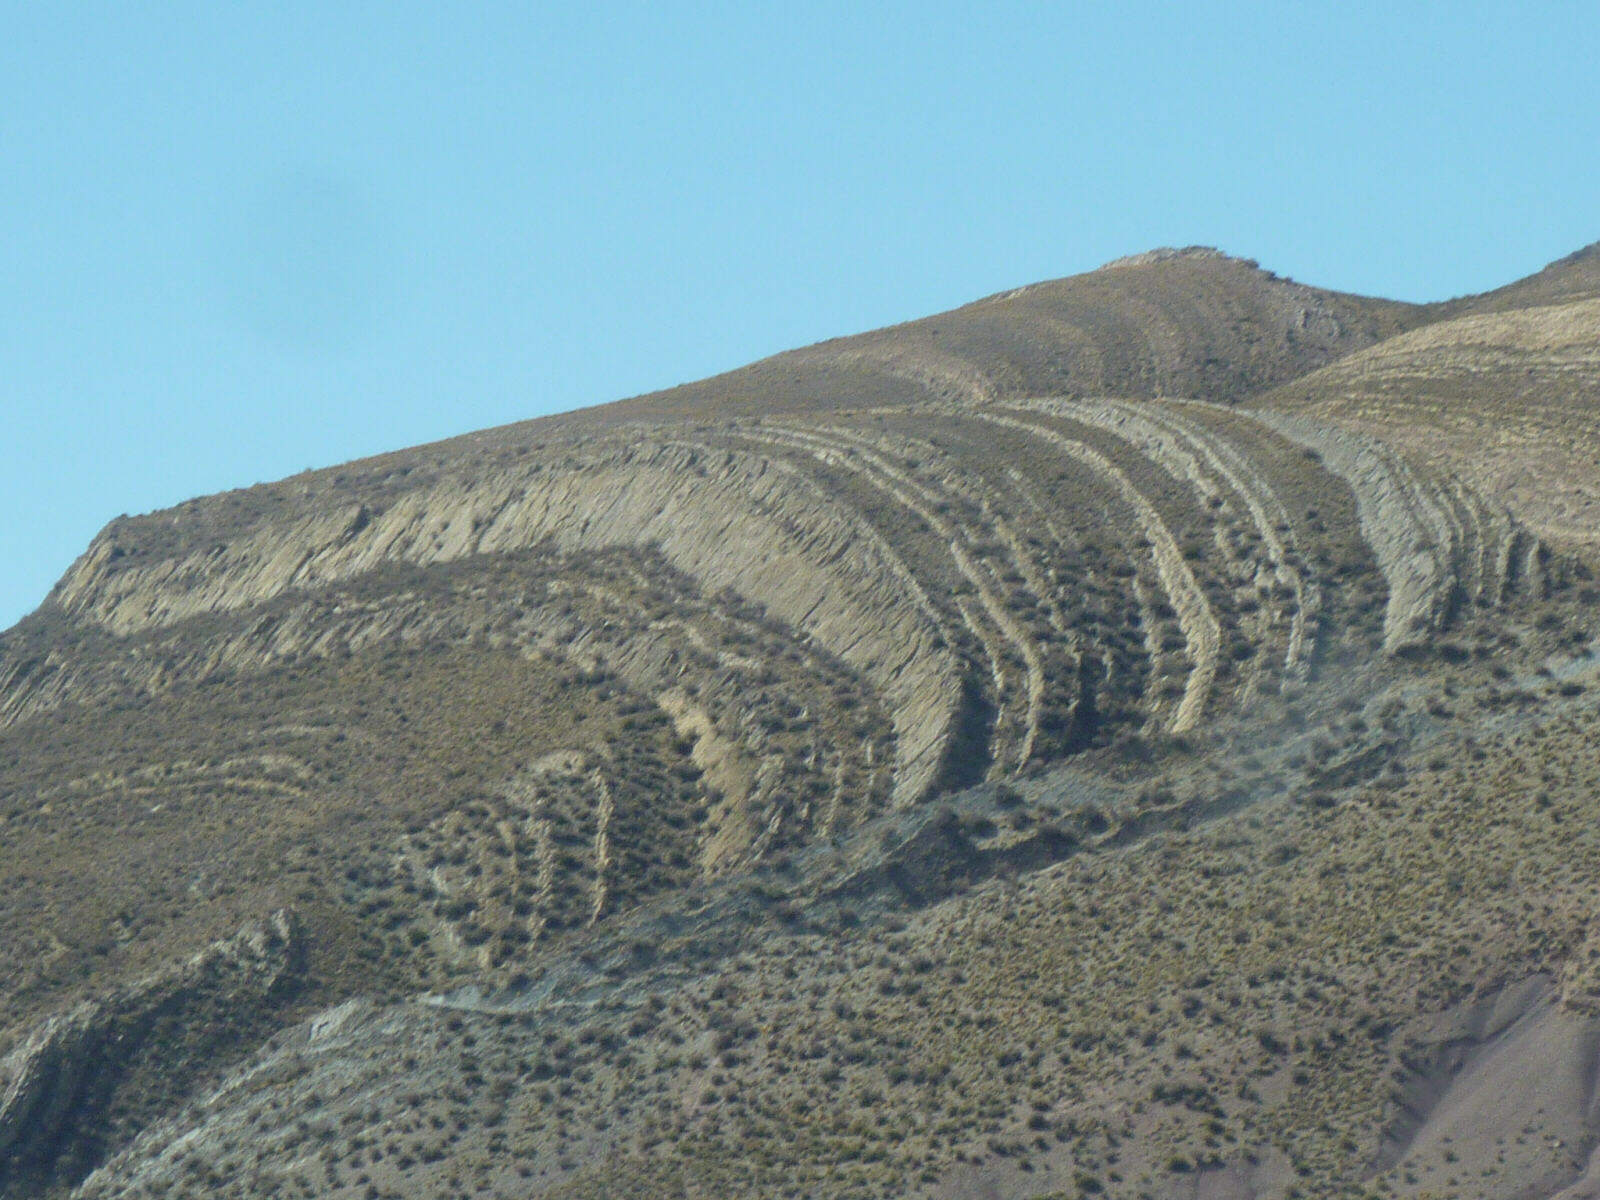 'Sliced' mountains near Humahuaca, Argentina